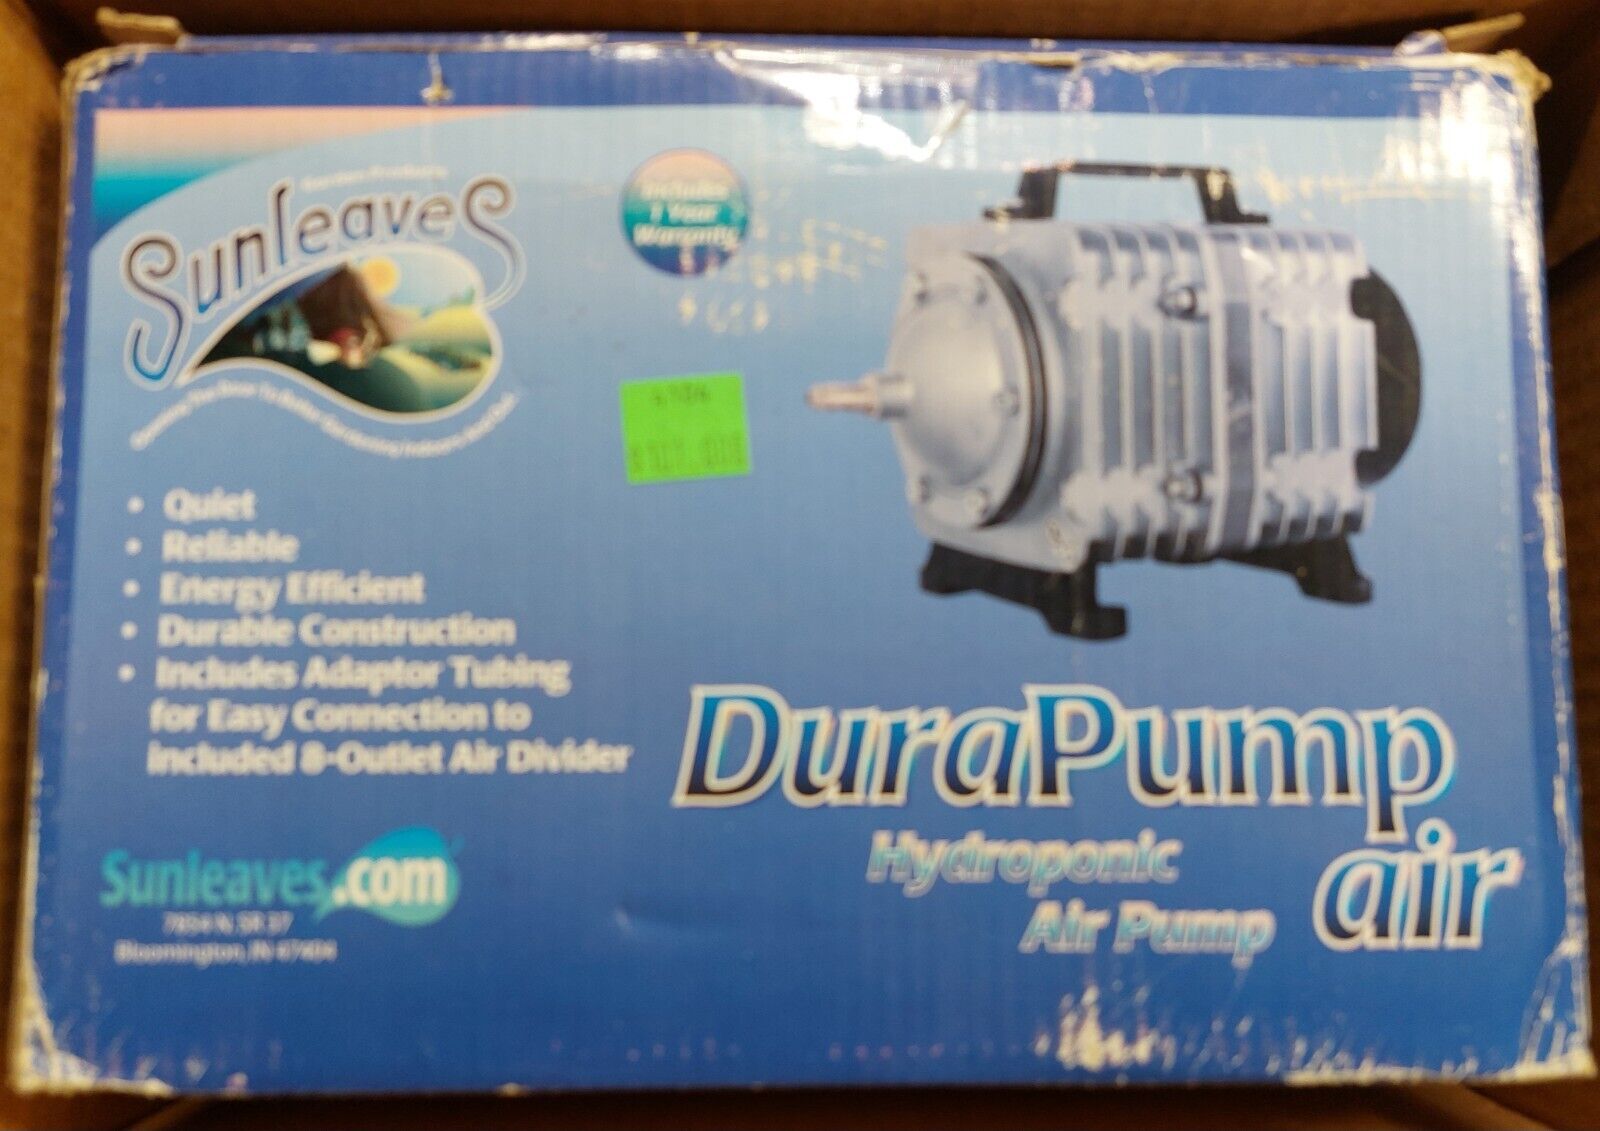 Sunleaves Dura Air Pump